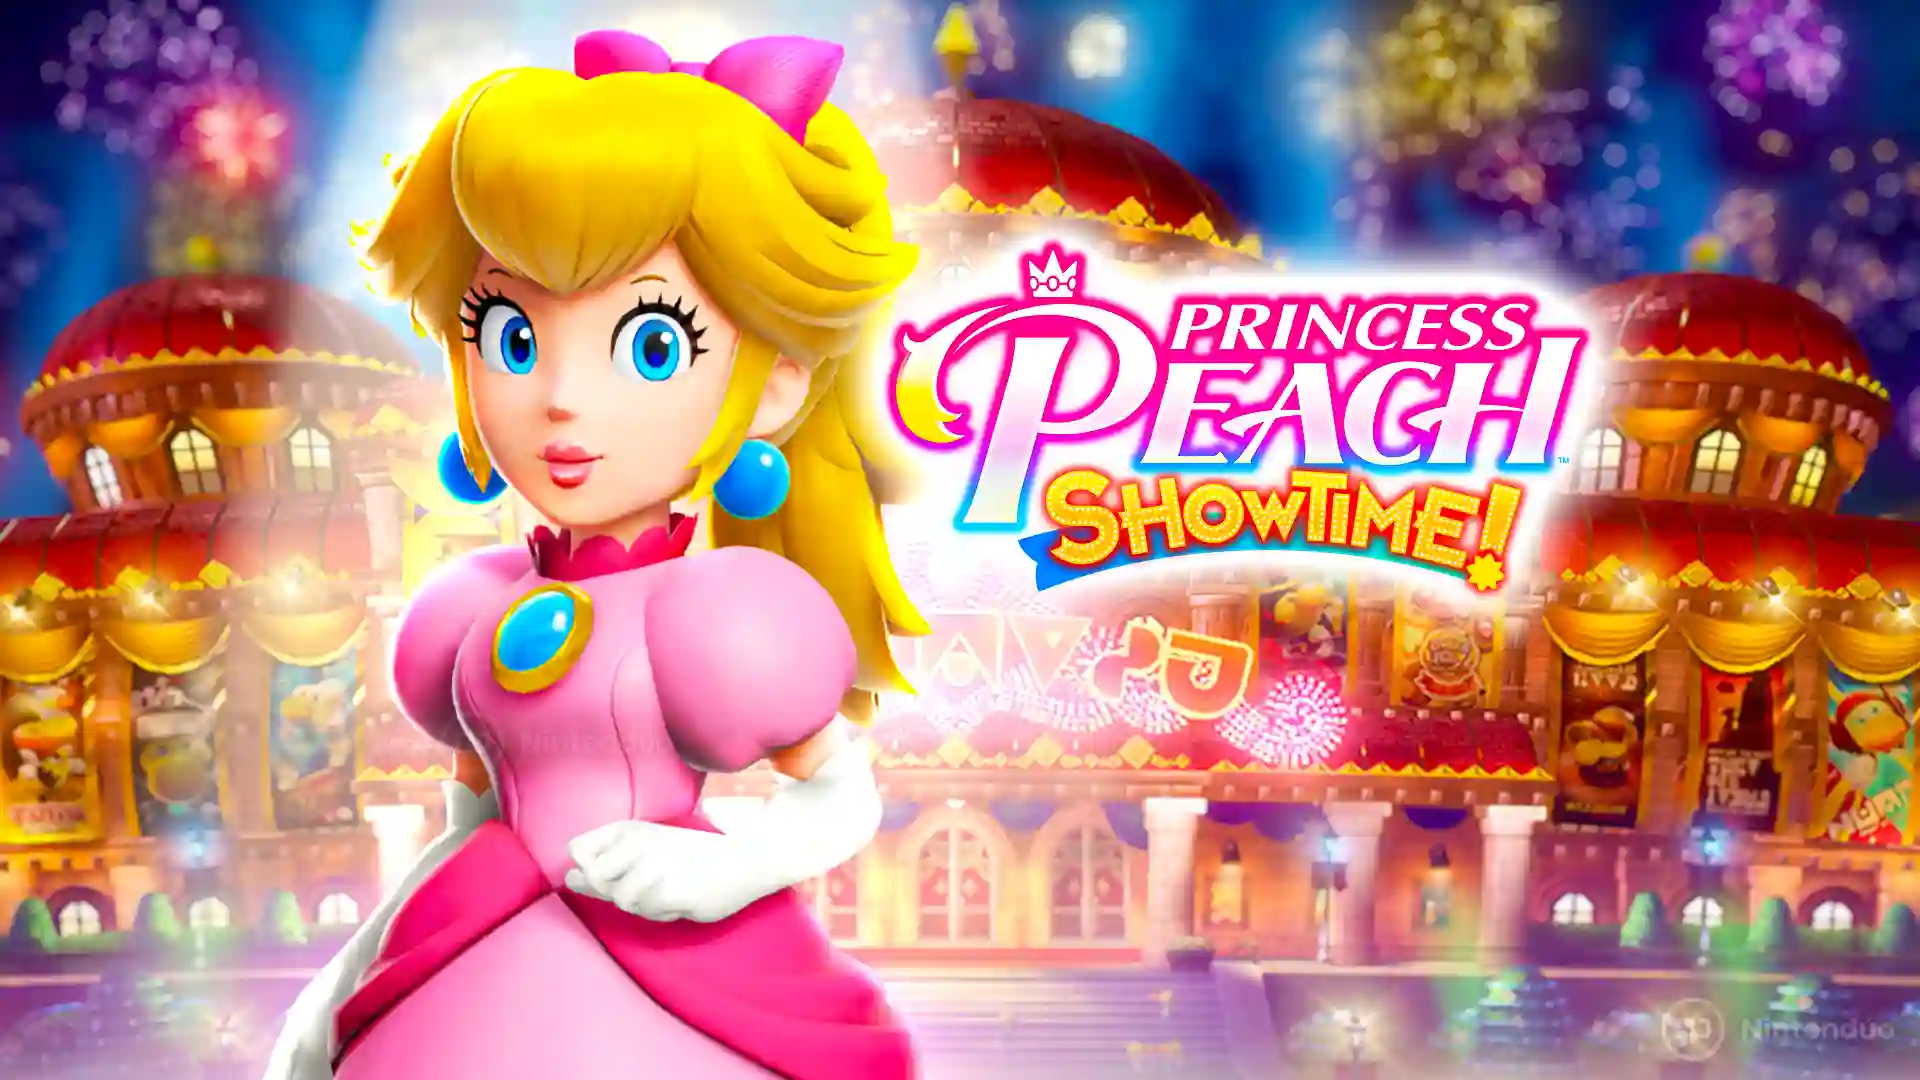 Análisis de Princess Peach: Showtime! para Nintendo Switch